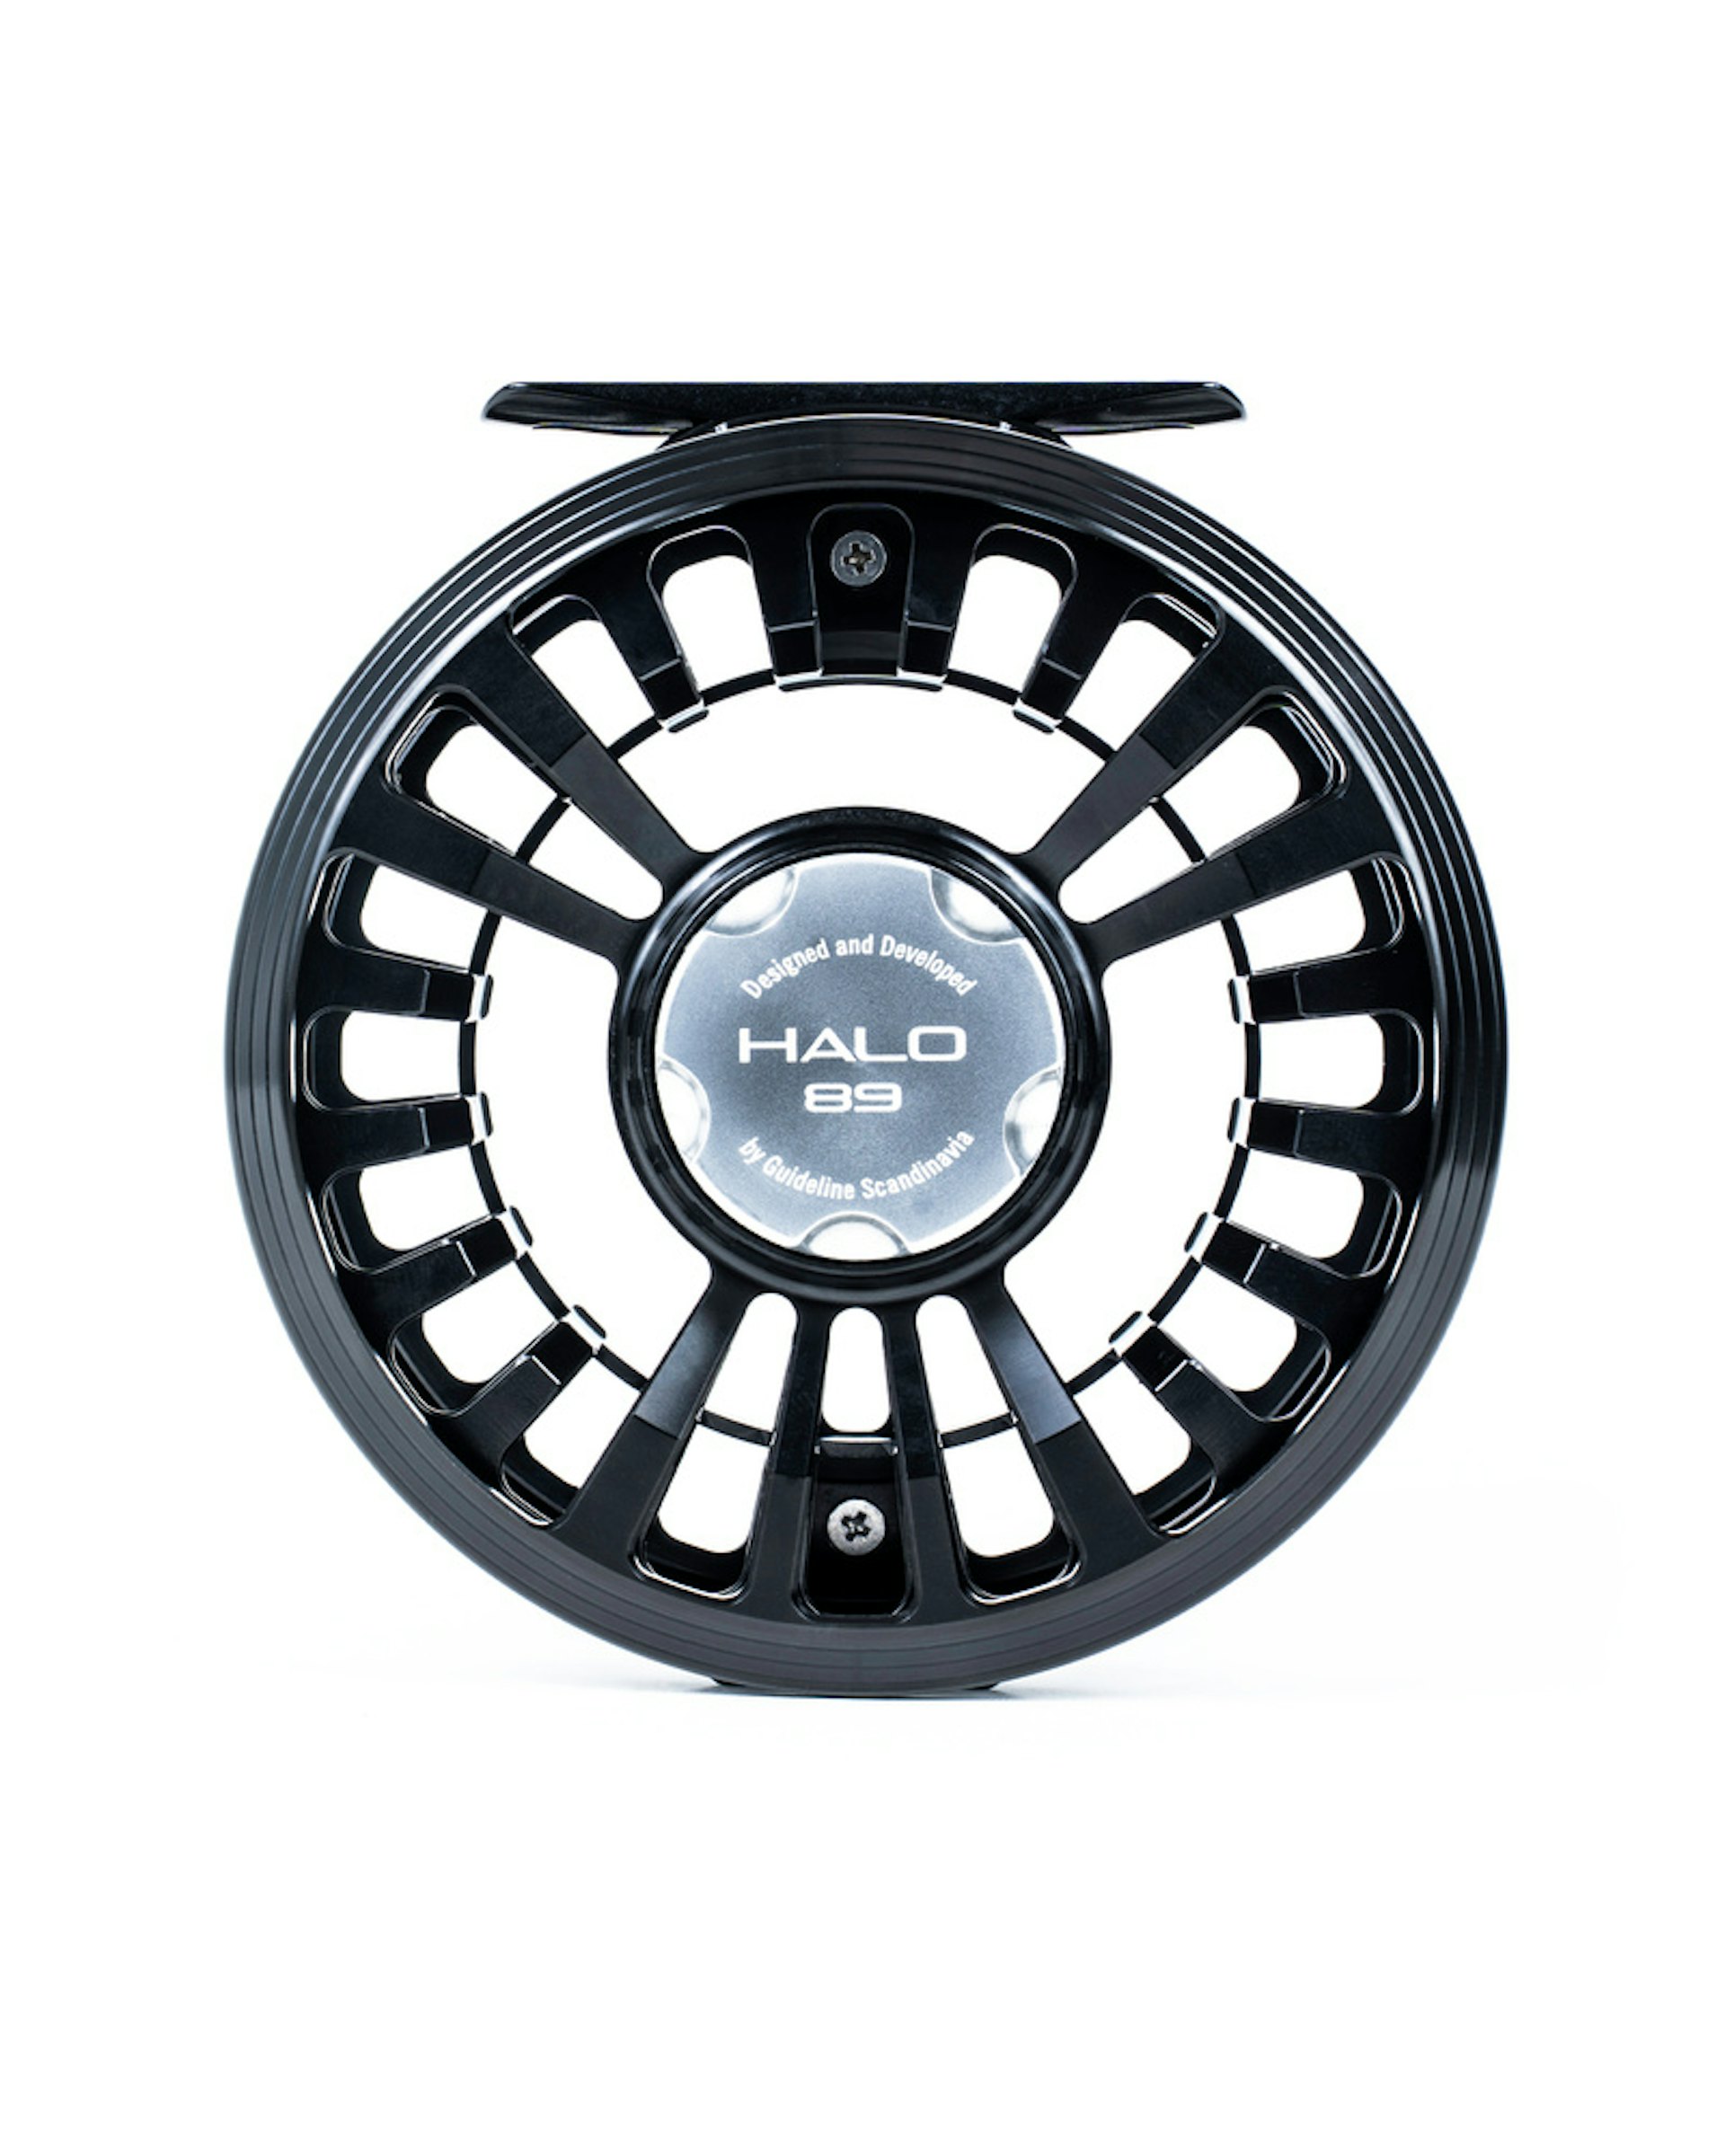 Halo Black Stealth #911 (bild 4 av 4)